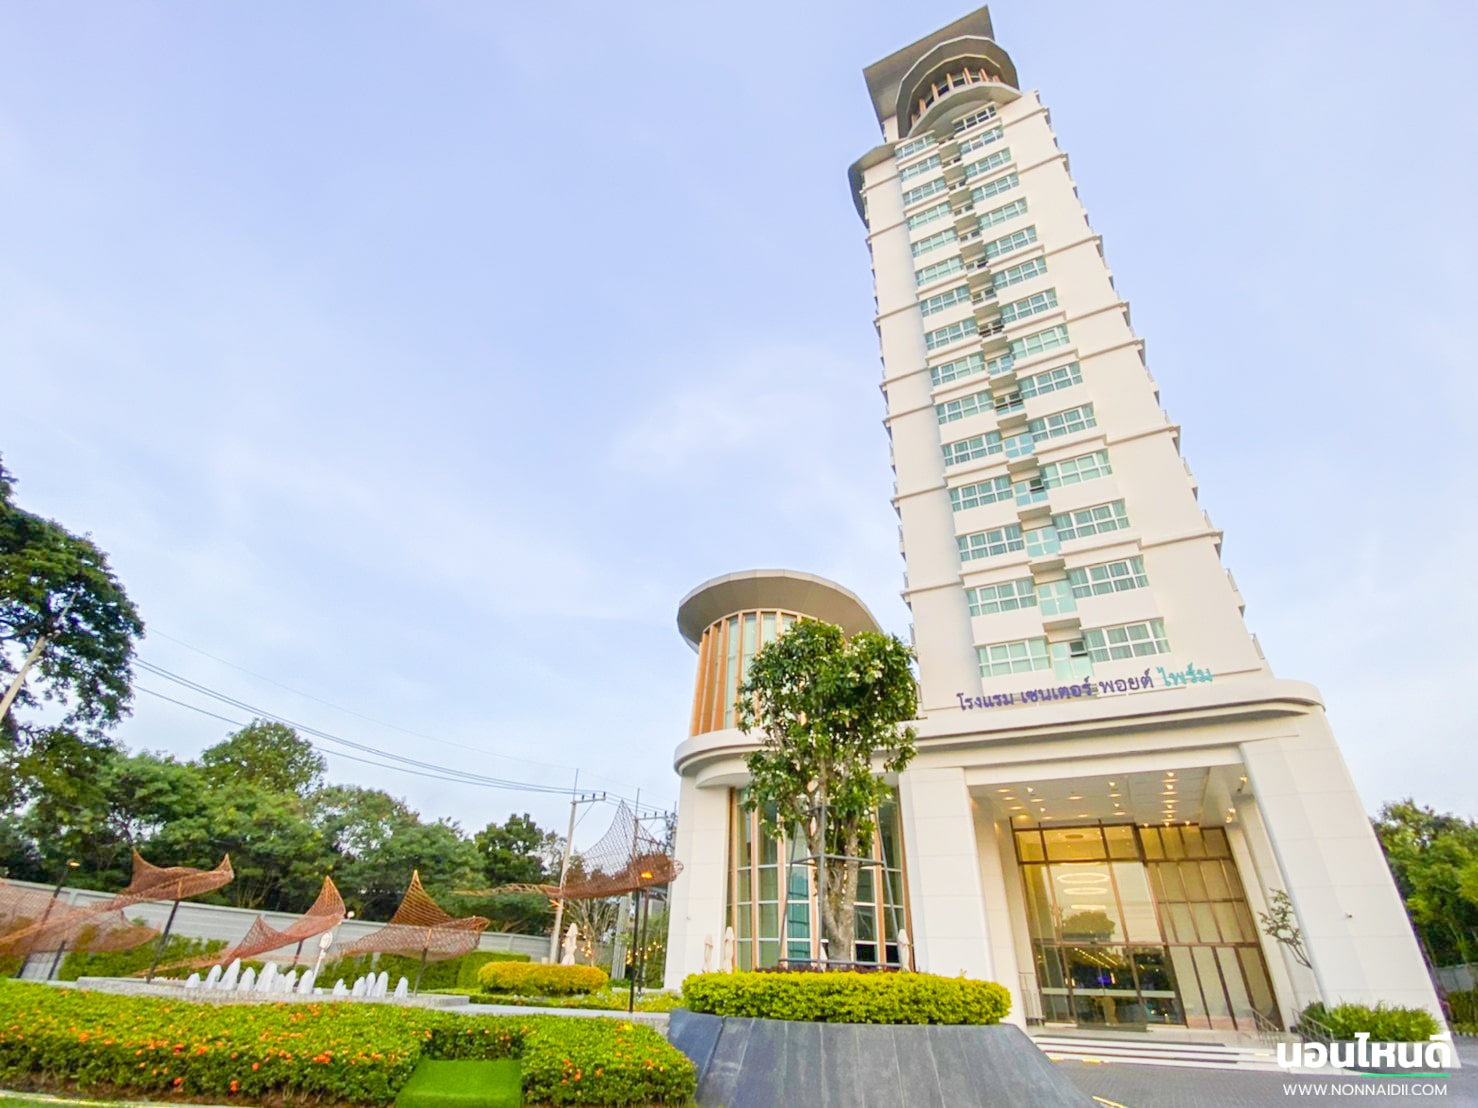 รีวิว!! Centre Point Prime Hotel Pattaya นอนโรงแรม 4.5 ดาว วิวทะเล จ่ายแค่ 739 บาท!